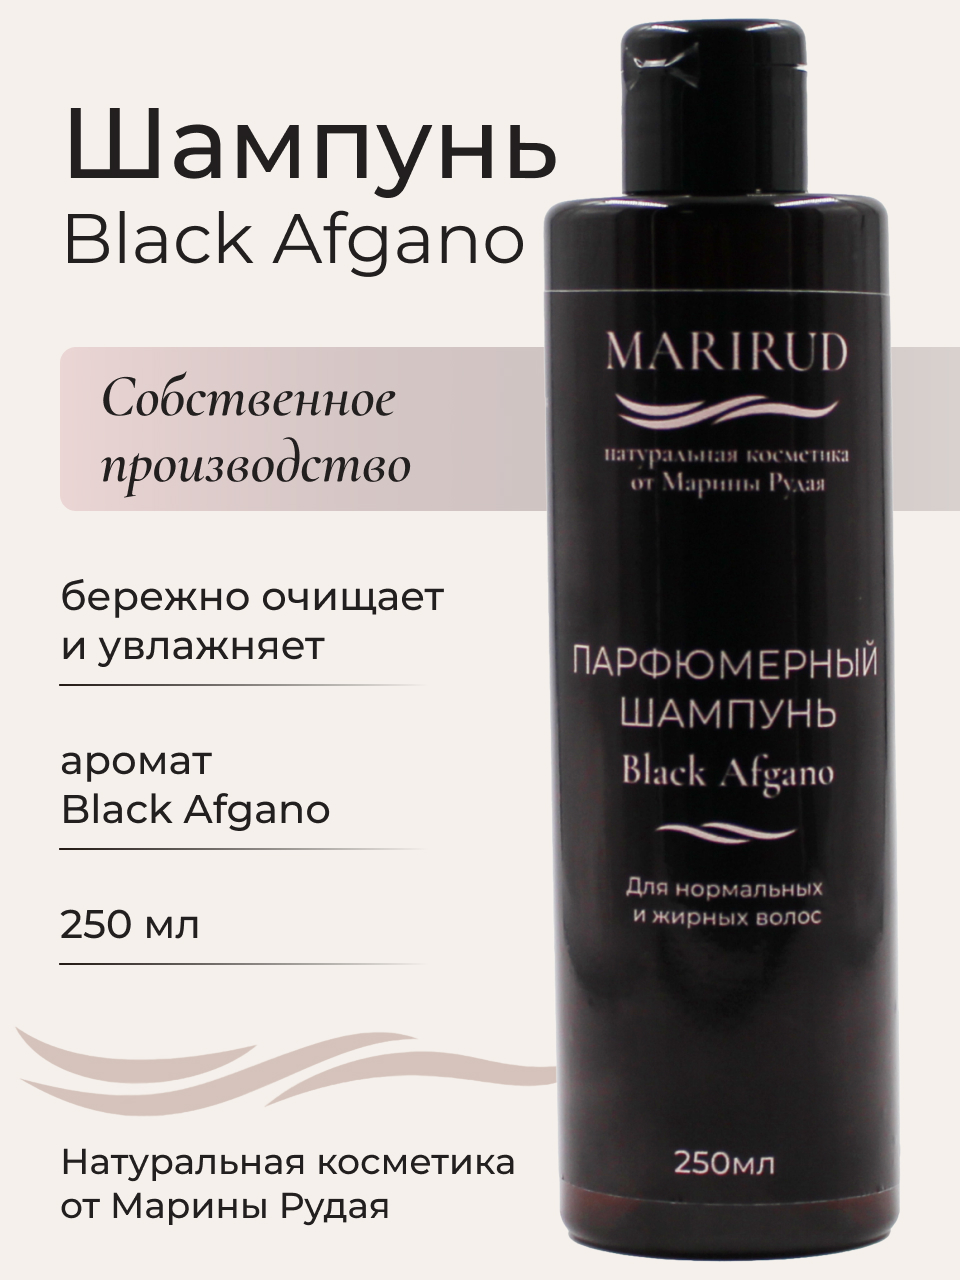 Набор парфюмерный- Шампуни Black Afgano и Tobacco Vanille вдали от безумной толпы